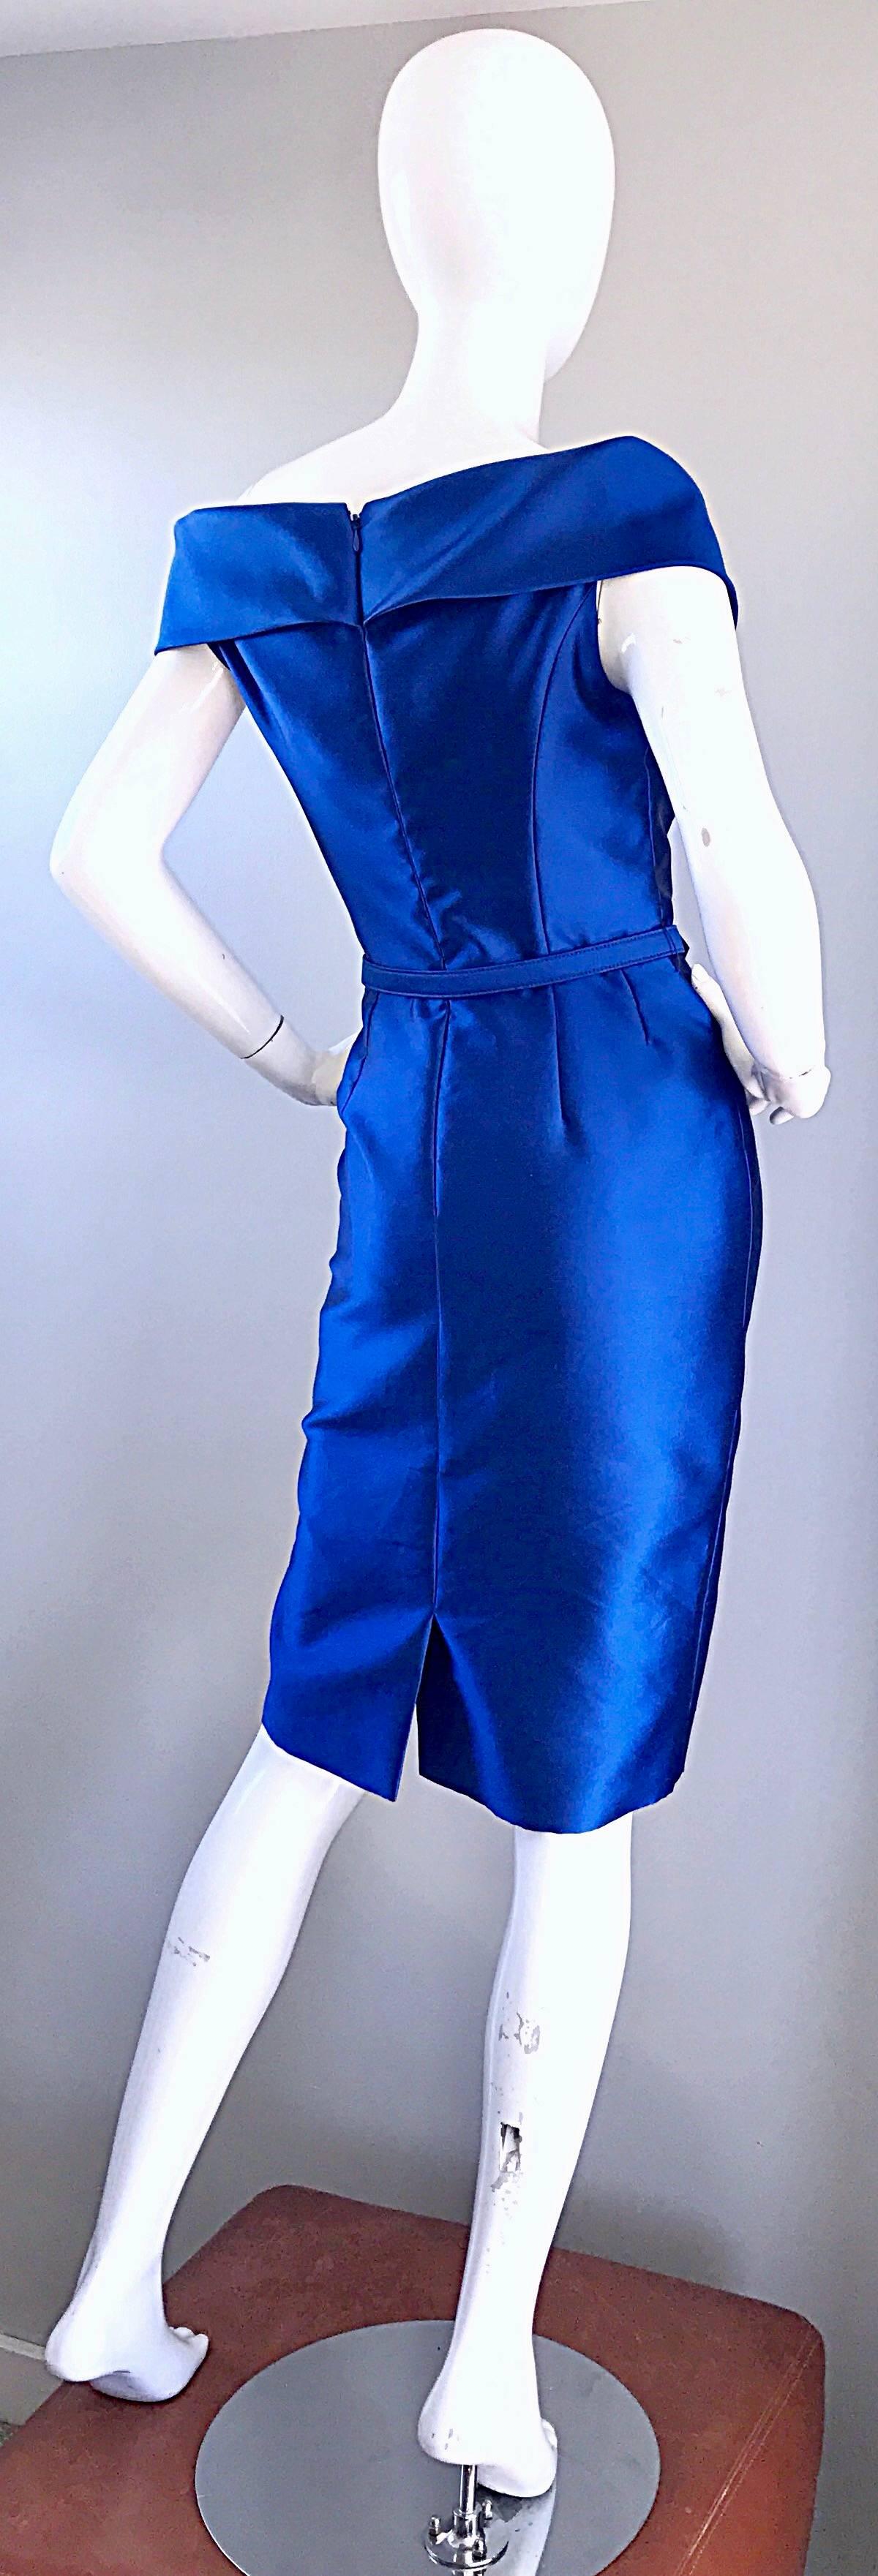 Women's Catherine Regehr Saks 5th Ave Royal Blue Silk Off - Shoulder Belted Dress Size 6